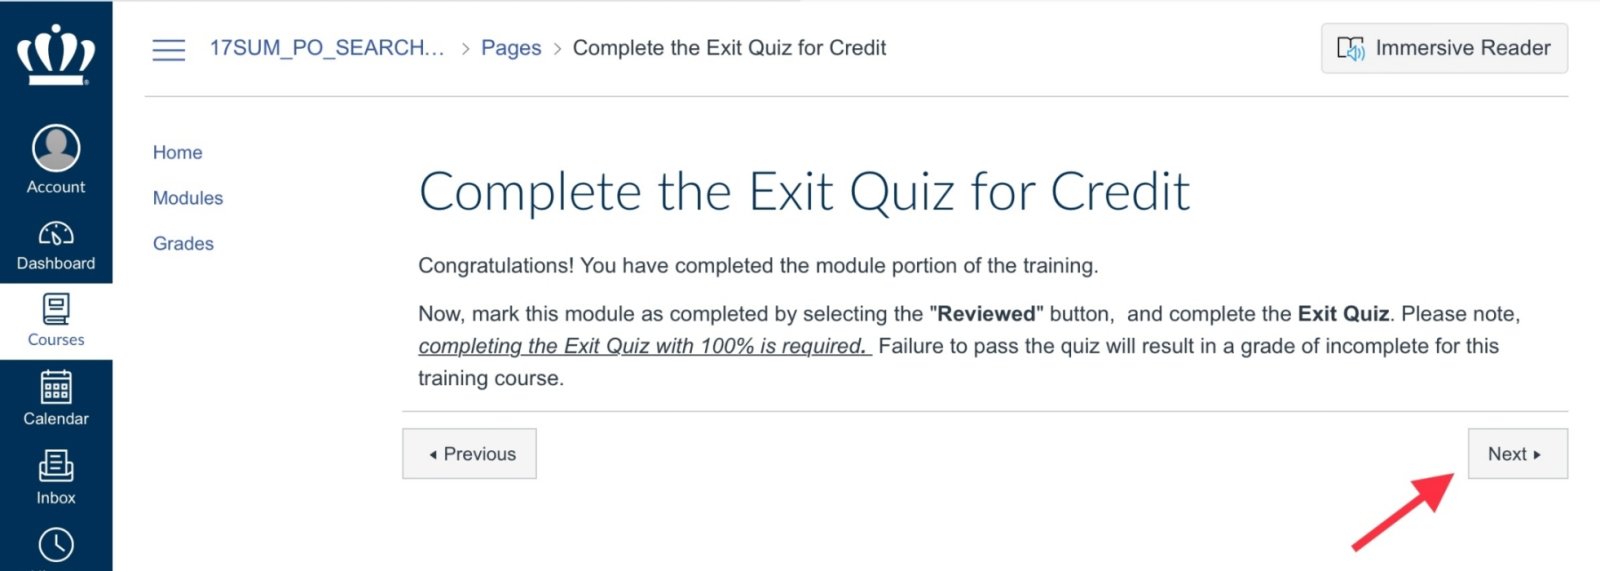 Submit Exit Quiz